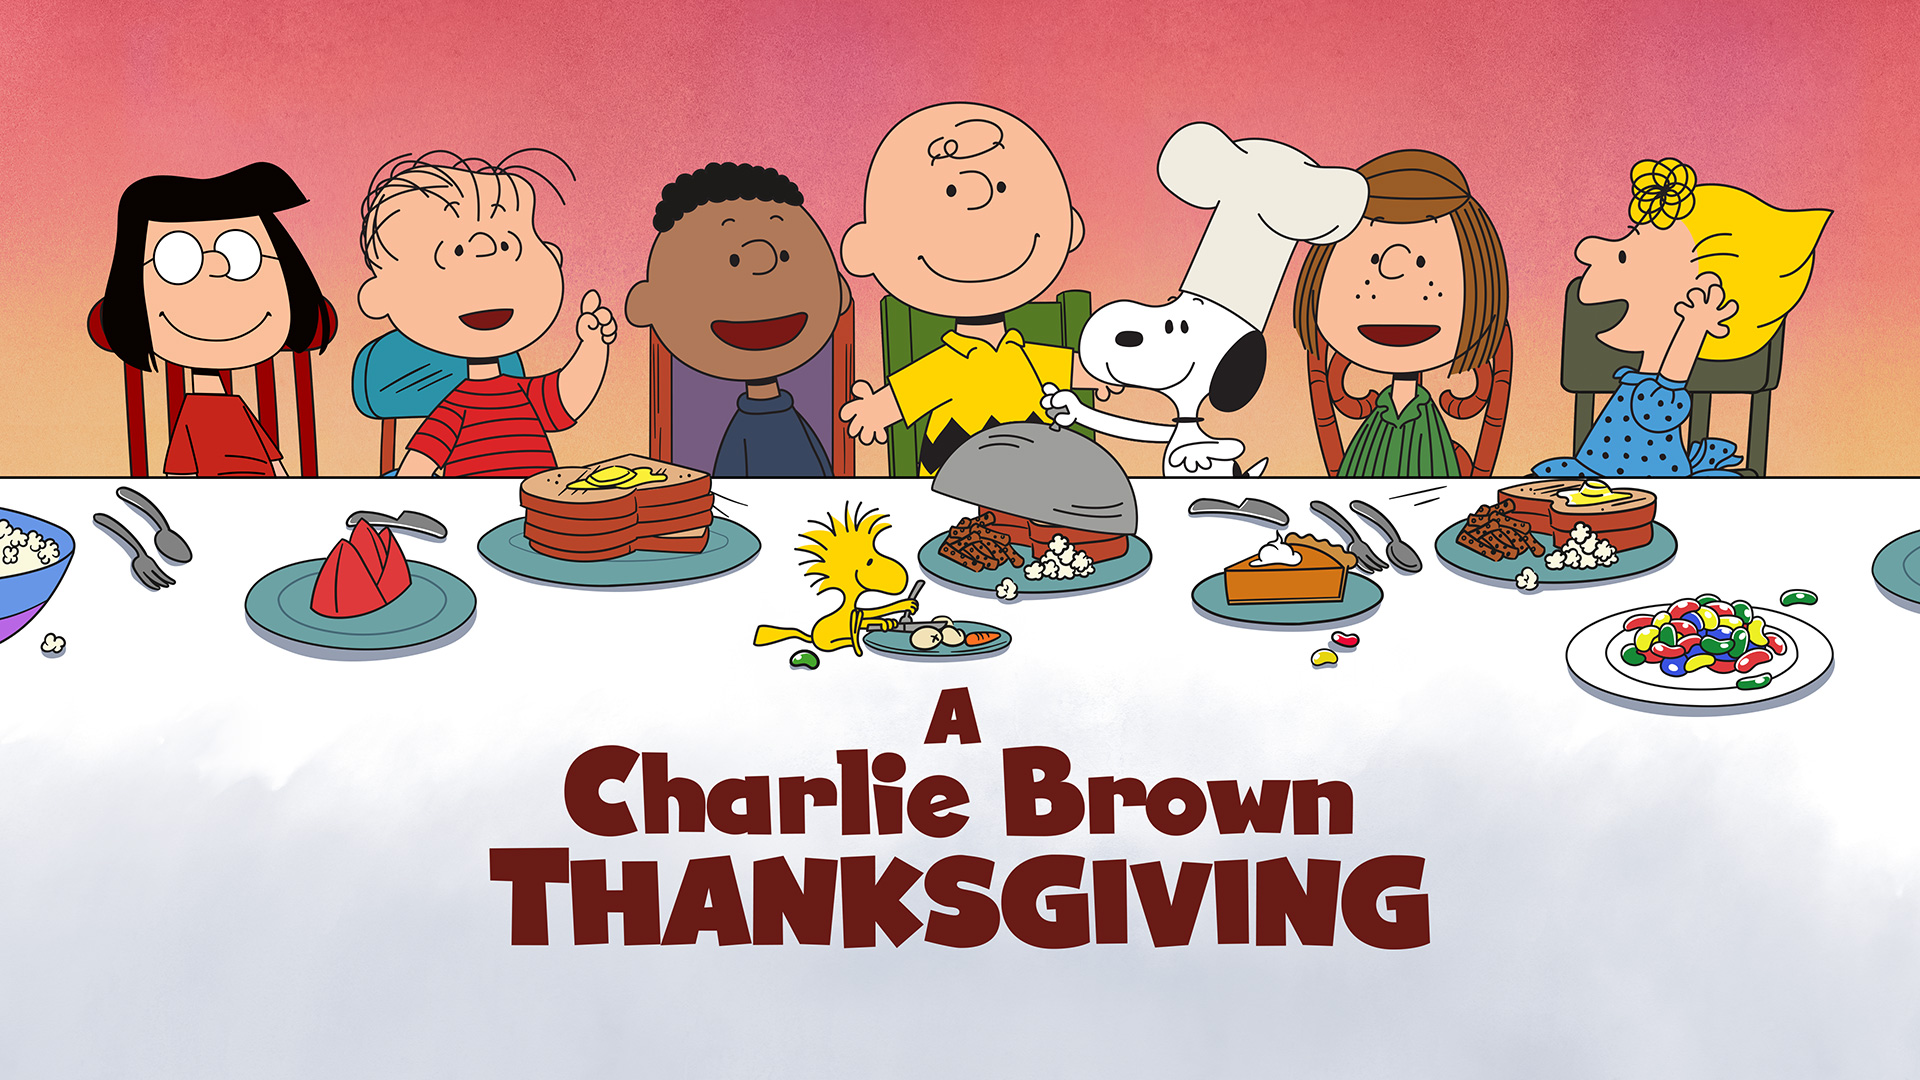 https://www.tpt.org/content/uploads/2020/11/charlie-brown-thanksgiving.jpg